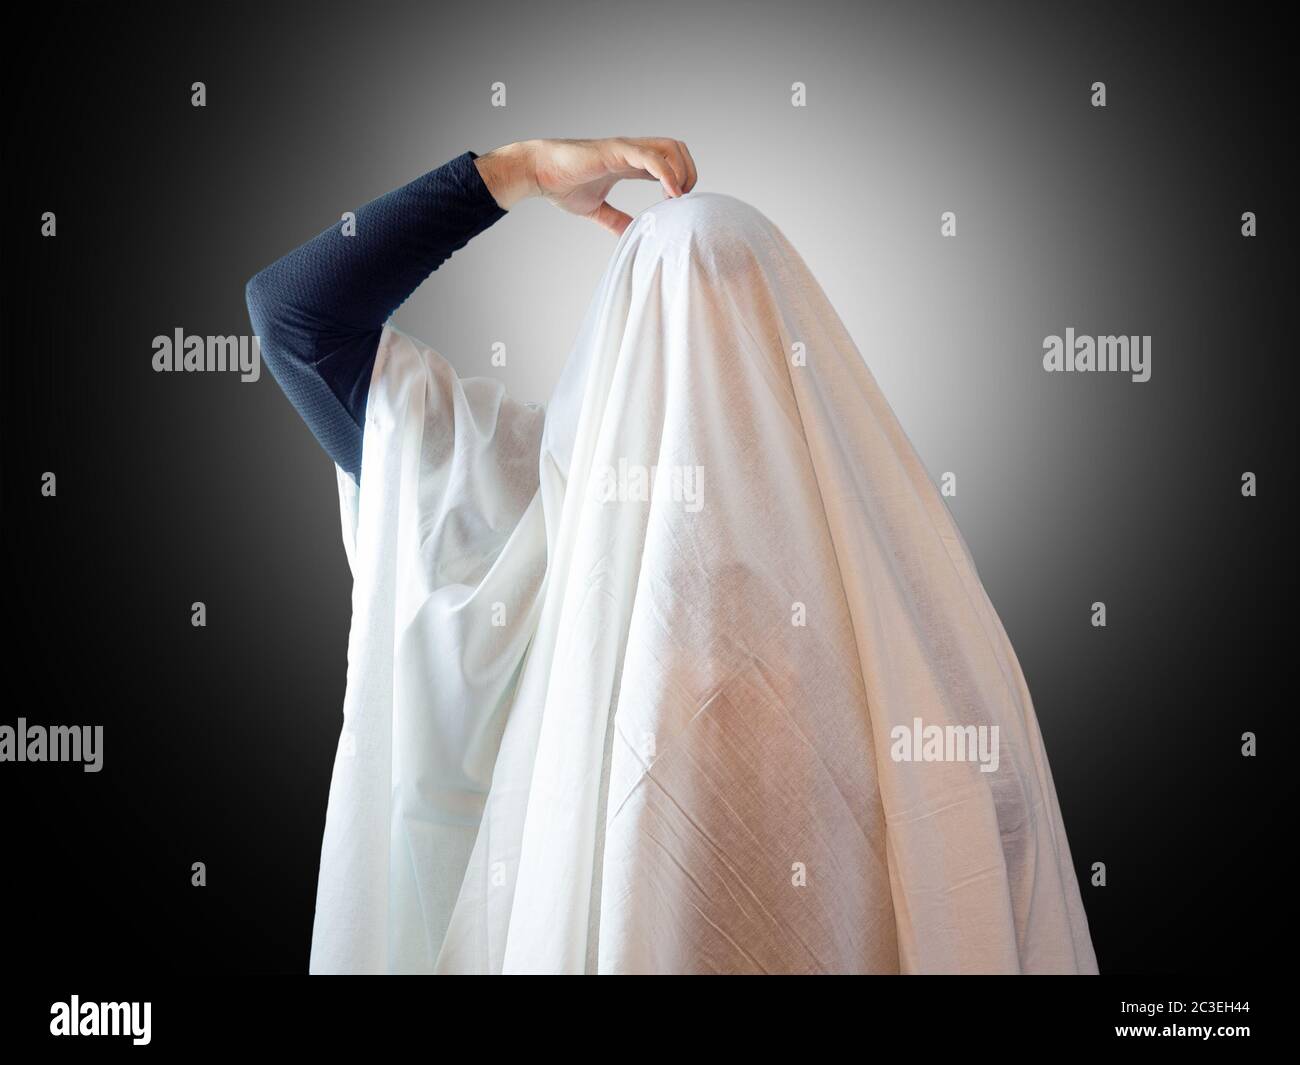 Un uomo, coperto da un foglio bianco come un fantasma, graffia la testa con la mano su uno sfondo scuro con retroilluminazione Foto Stock